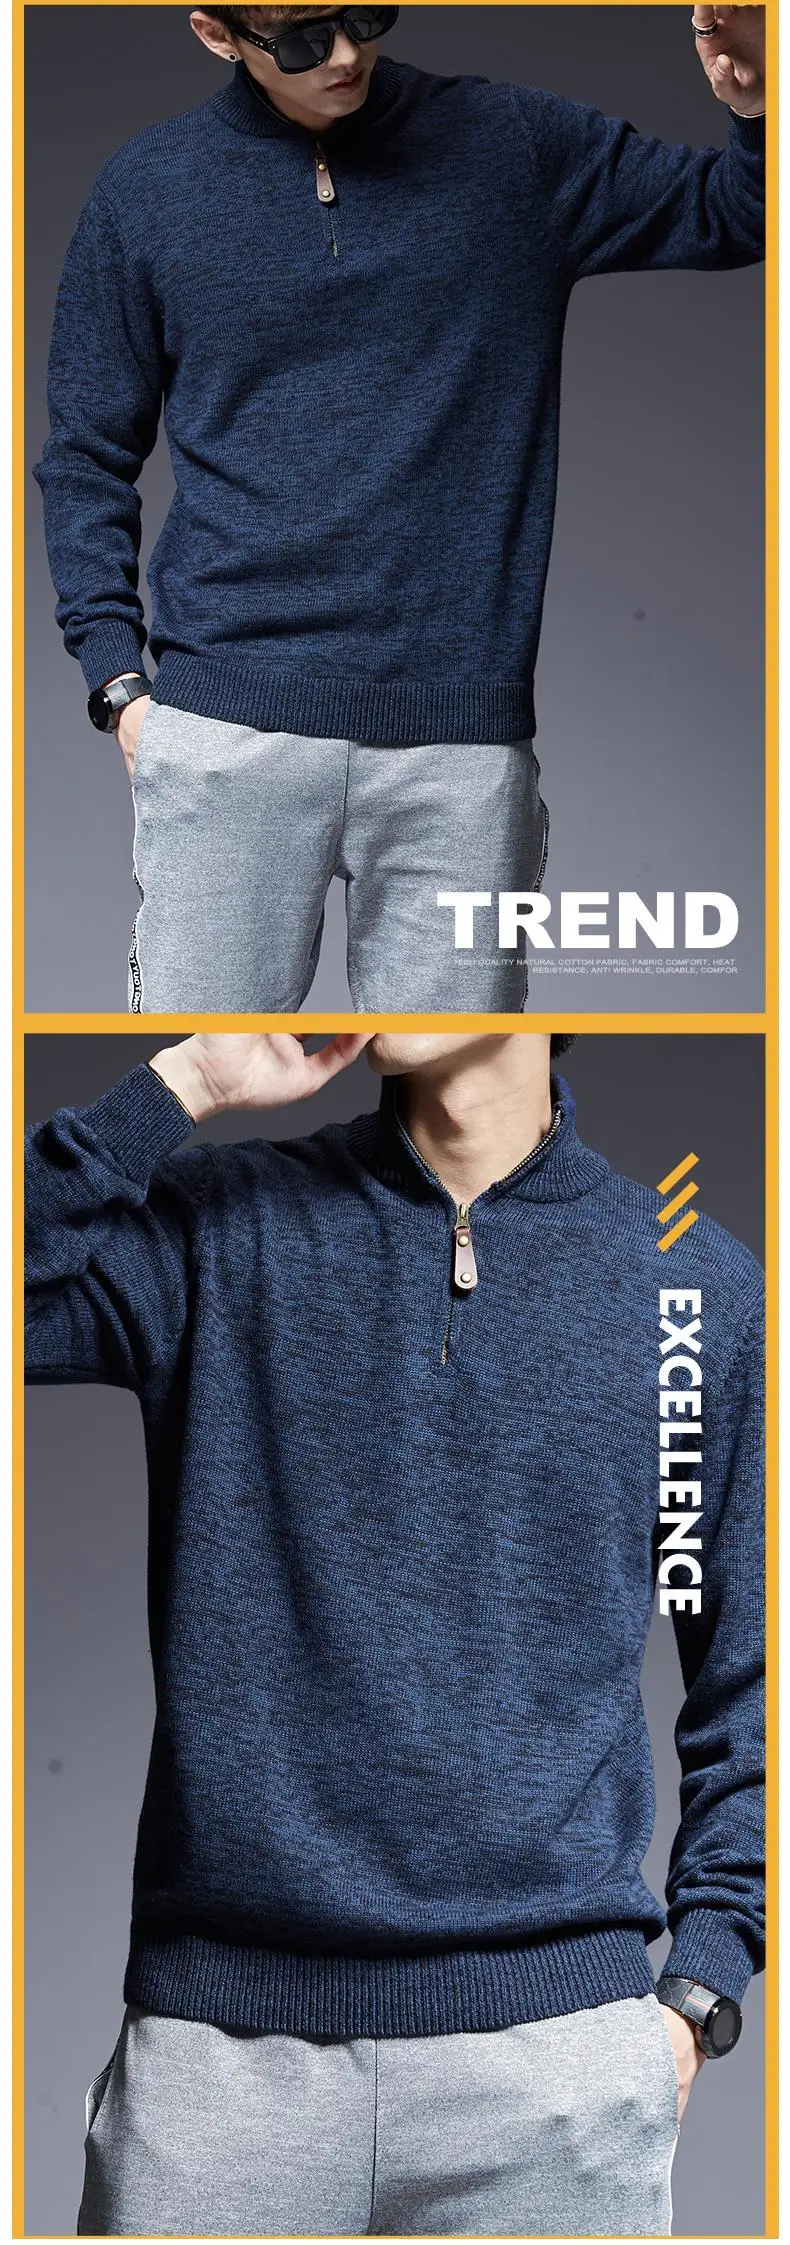 2019 новый осенний корейский стиль Повседневное Для мужчин s одежда модный бренд свитер мужские свитера Теплый, Облегающая посадка Джемперы